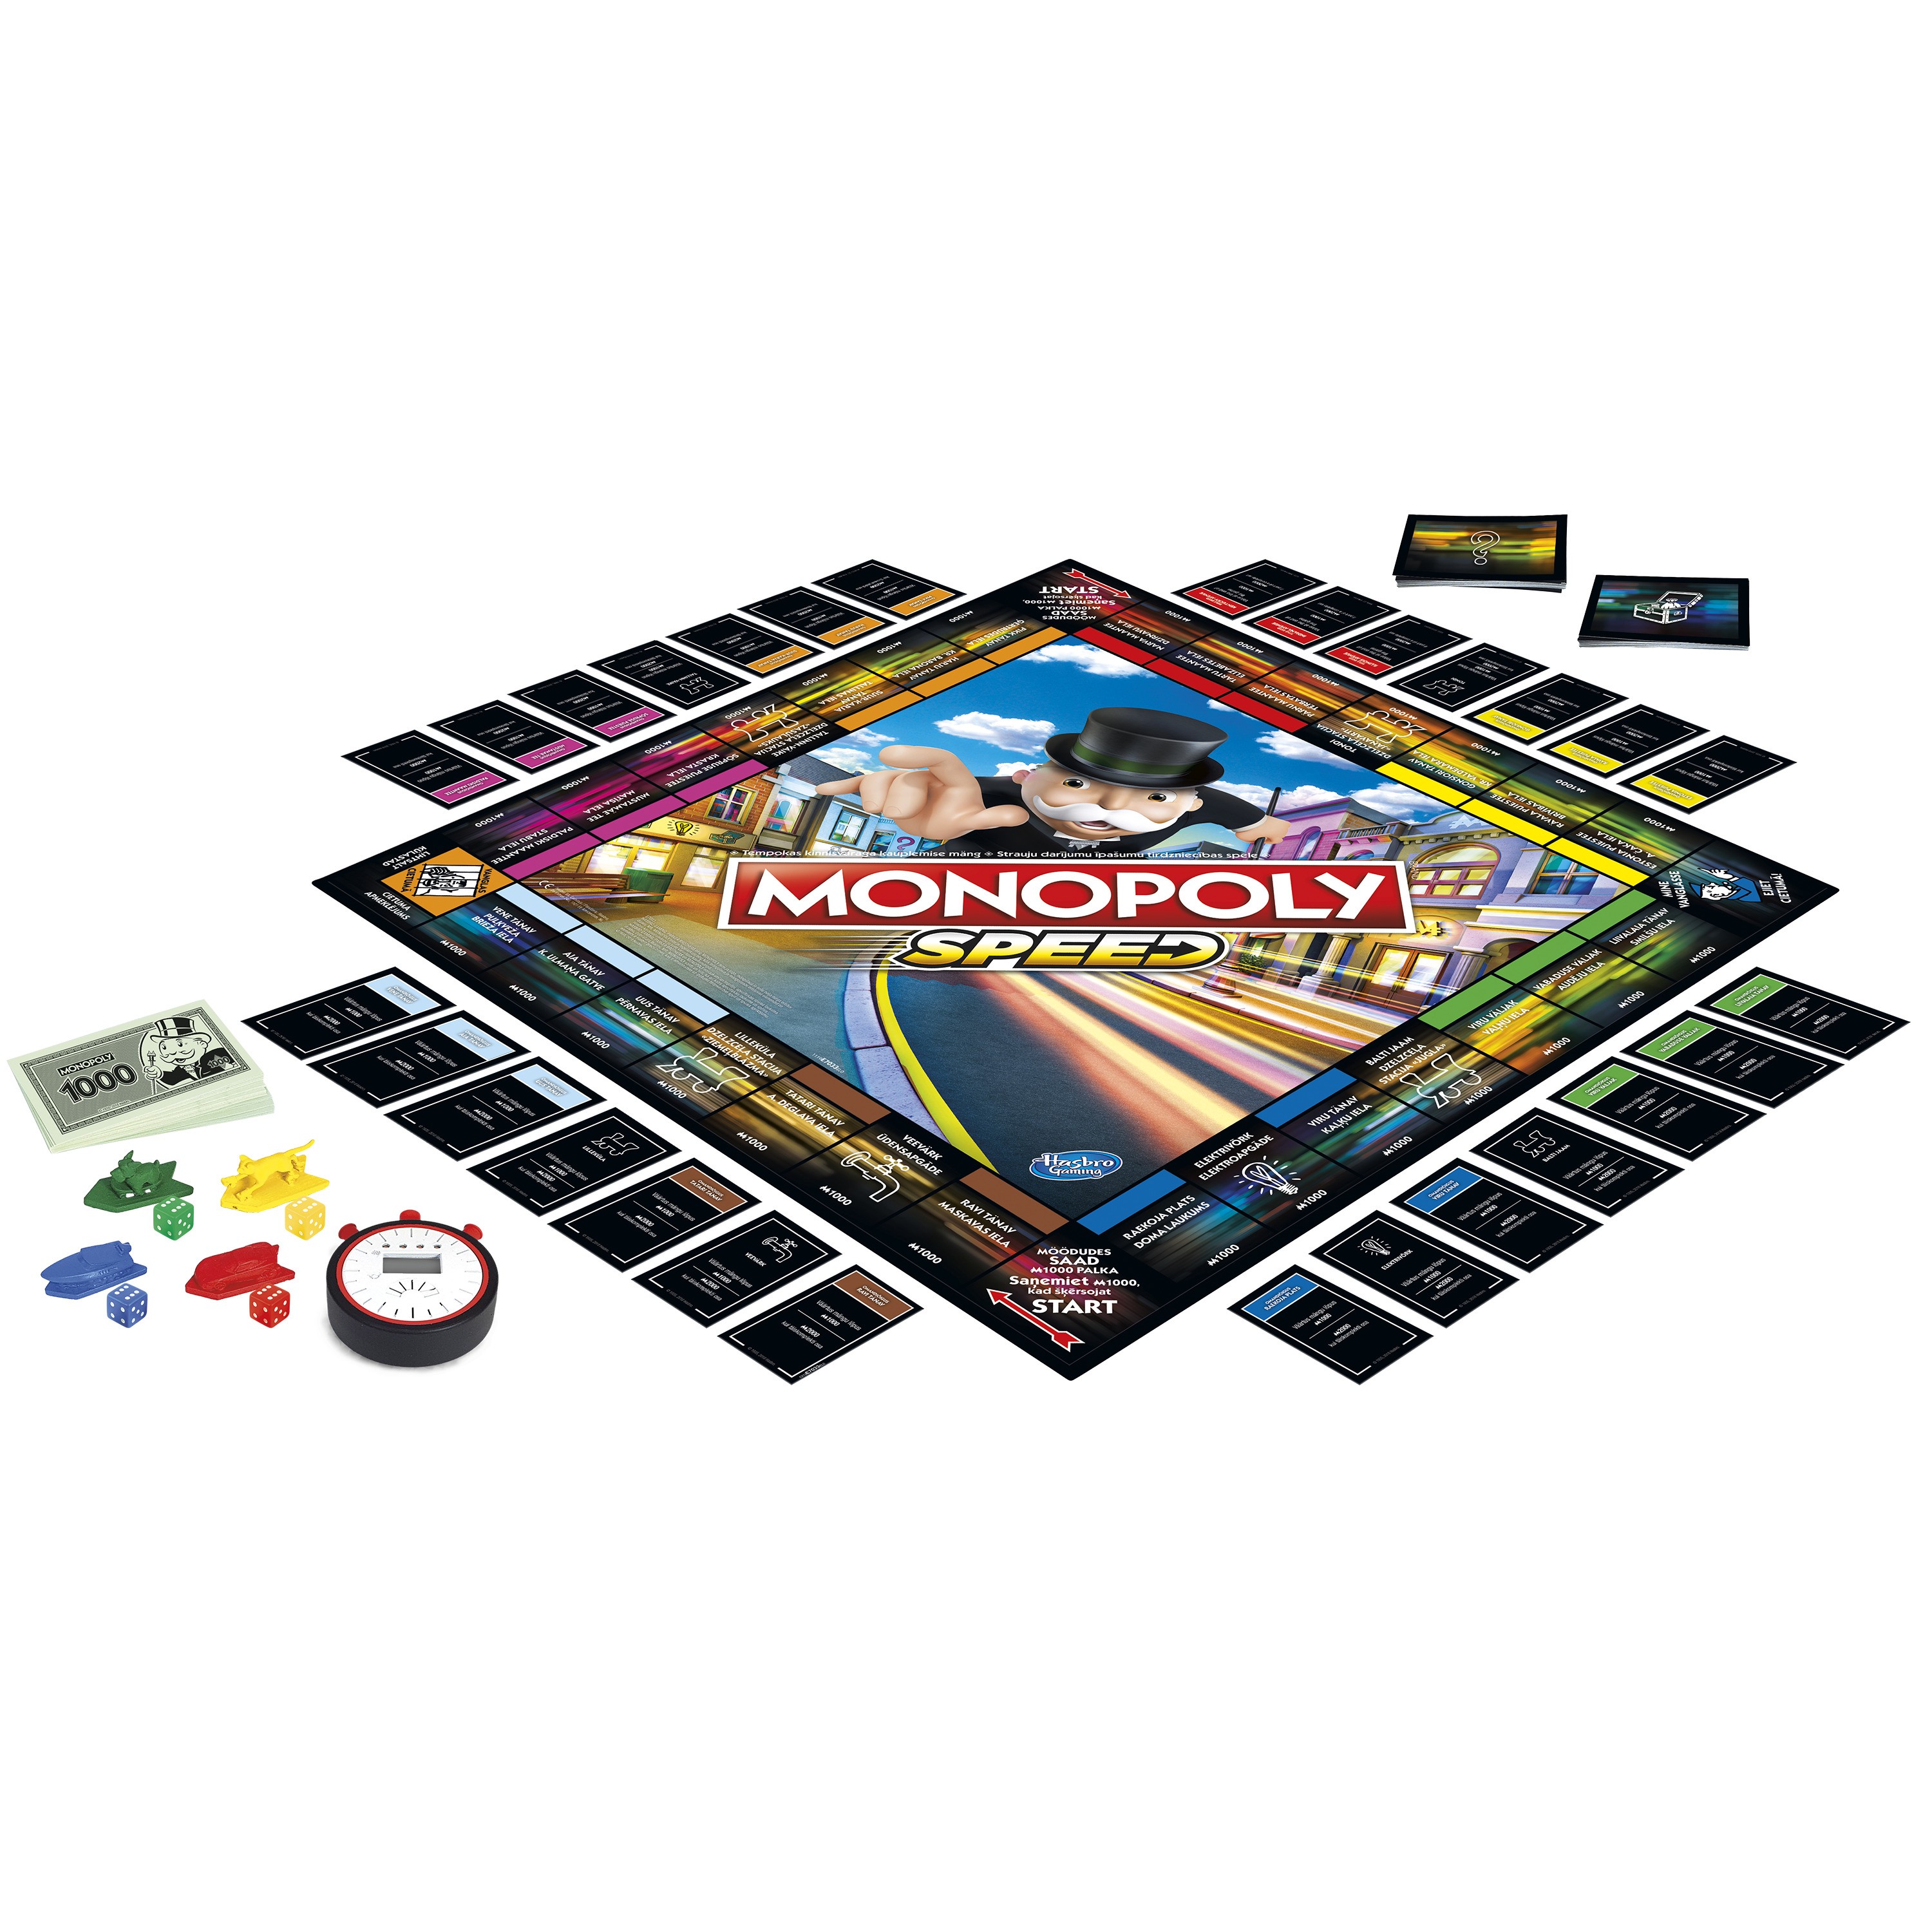 Monopoly Speed EST